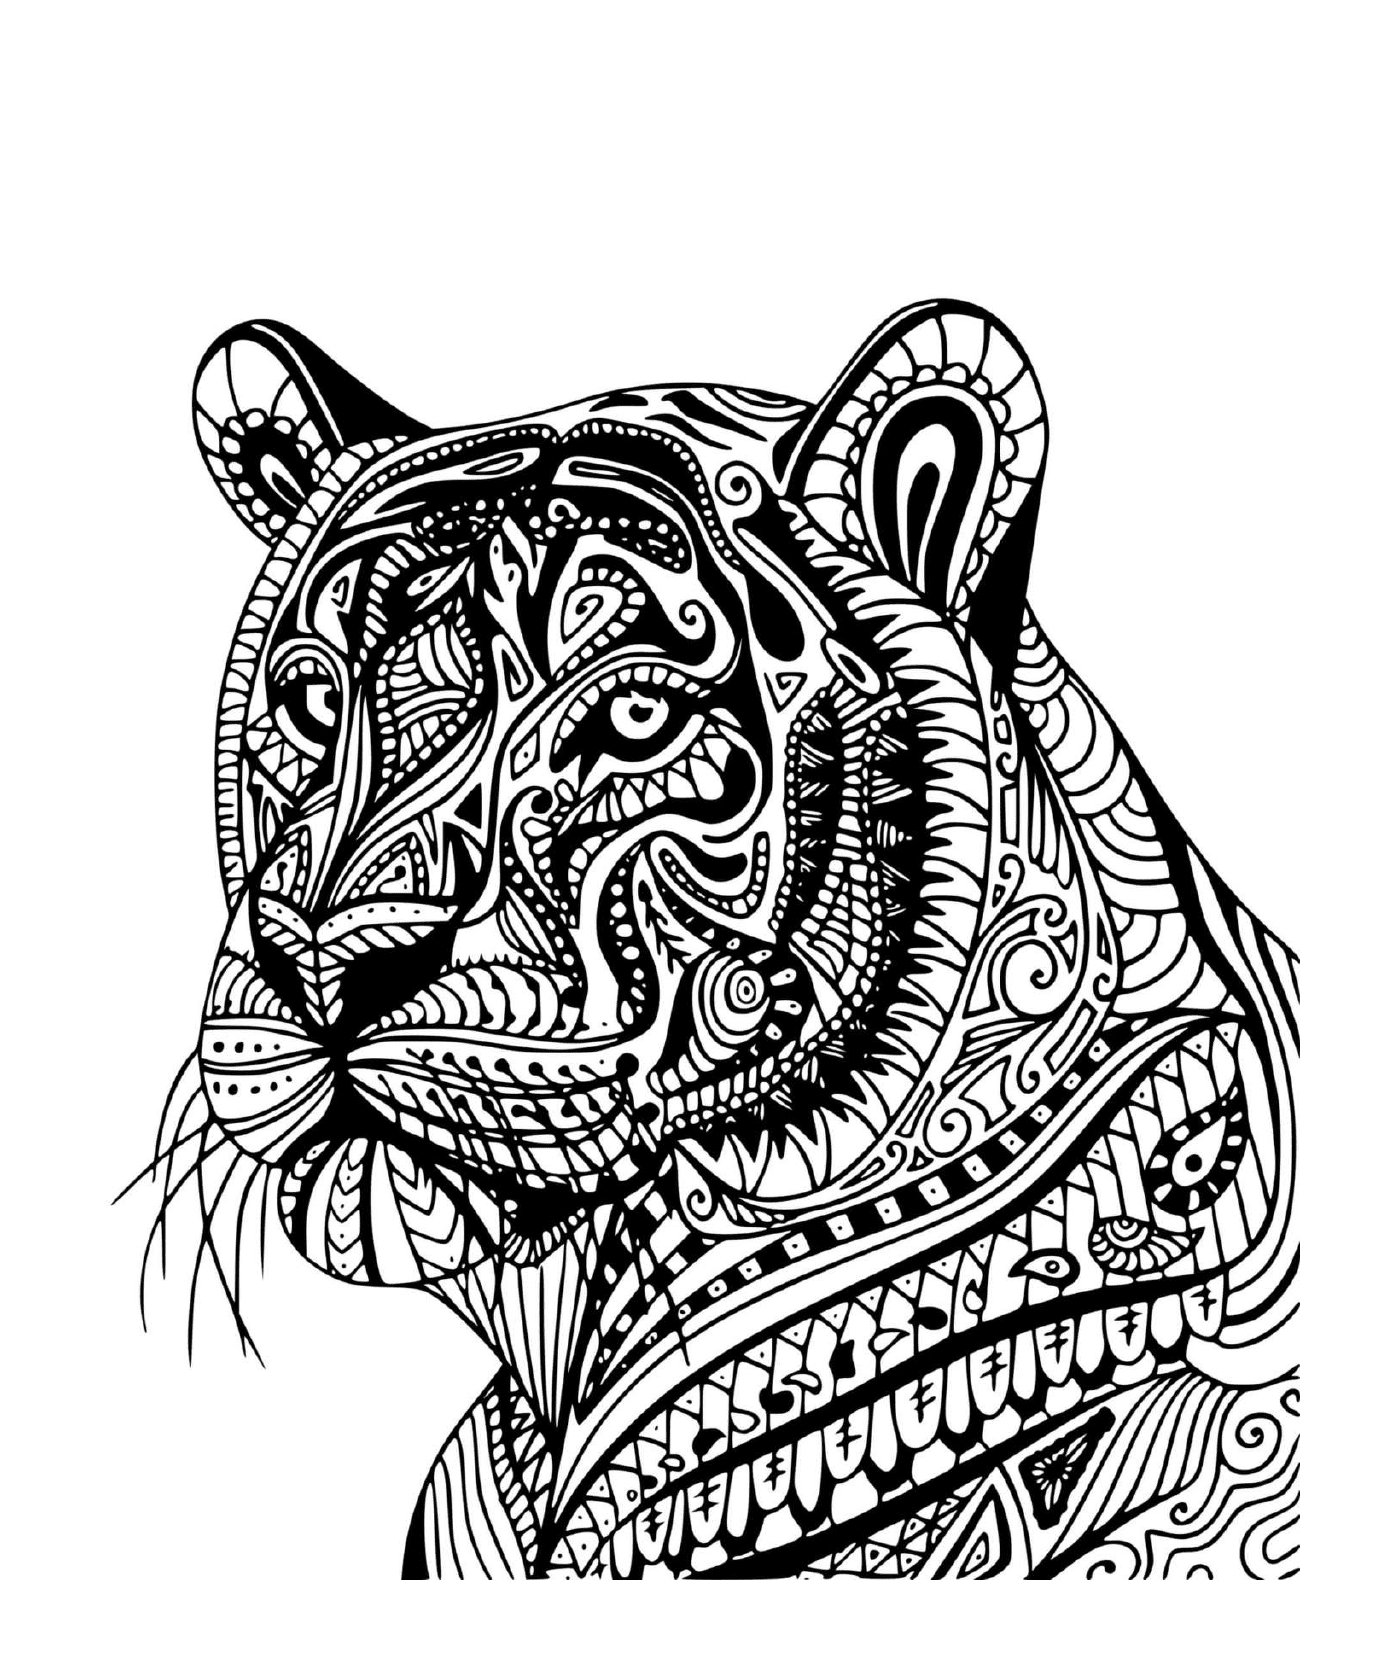  Um tigre adulto no perfil 